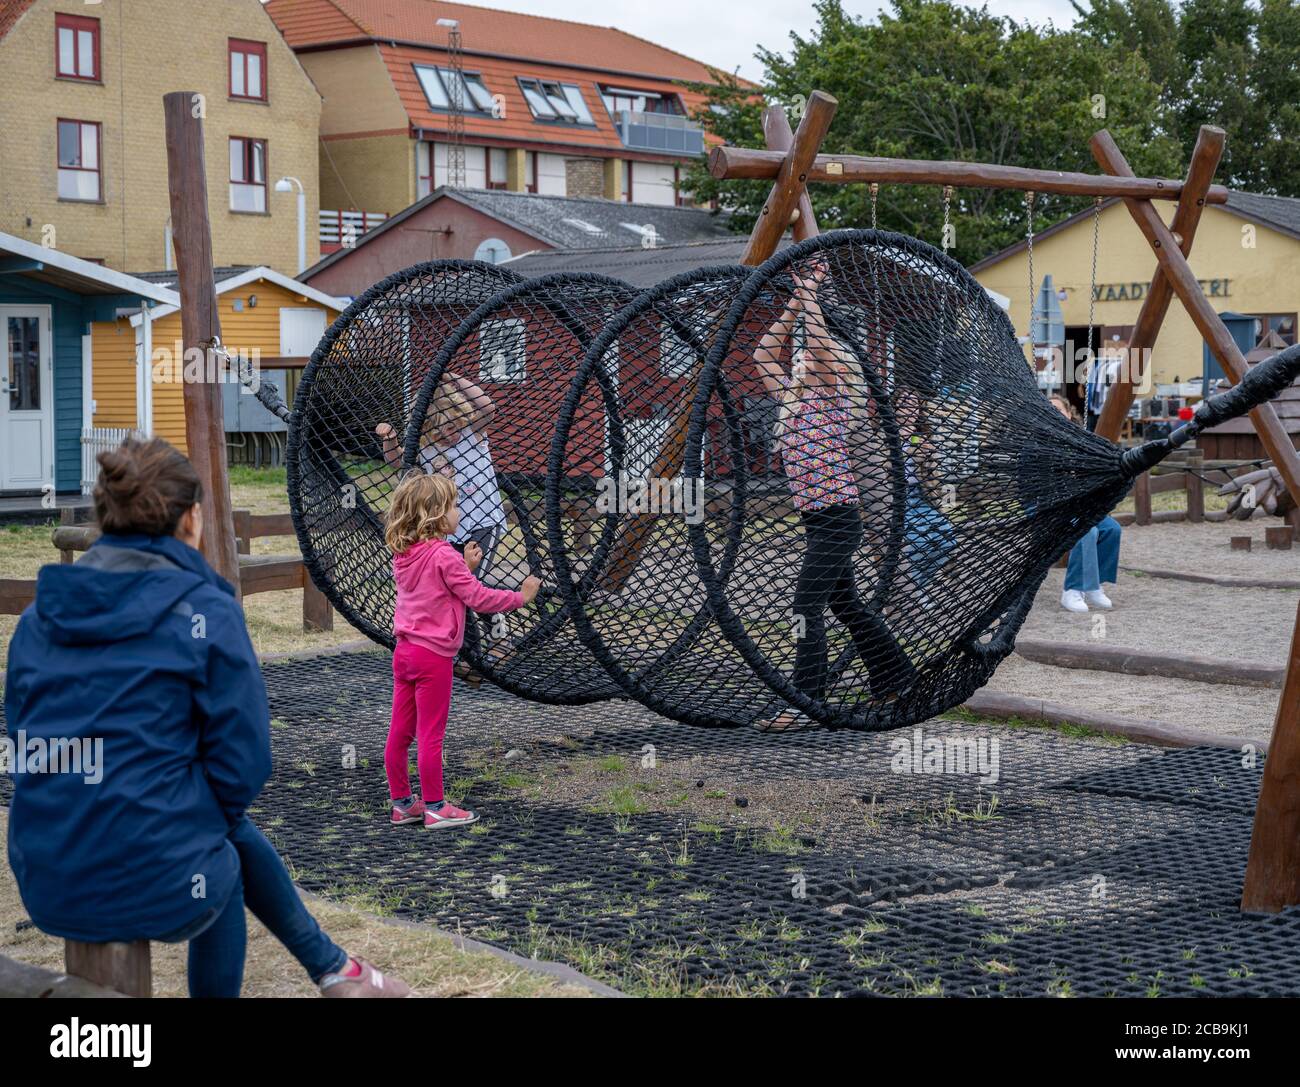 Hundested, Dänemark - 2. August 2020: Kinder spielen auf einem Spielplatz. Es gibt viele touristische Aktivitäten in der Marina. Aufgrund der Coronavirus-Pandemie haben die meisten Menschen in diesem Jahr einen Urlaub im Inland Stockfoto